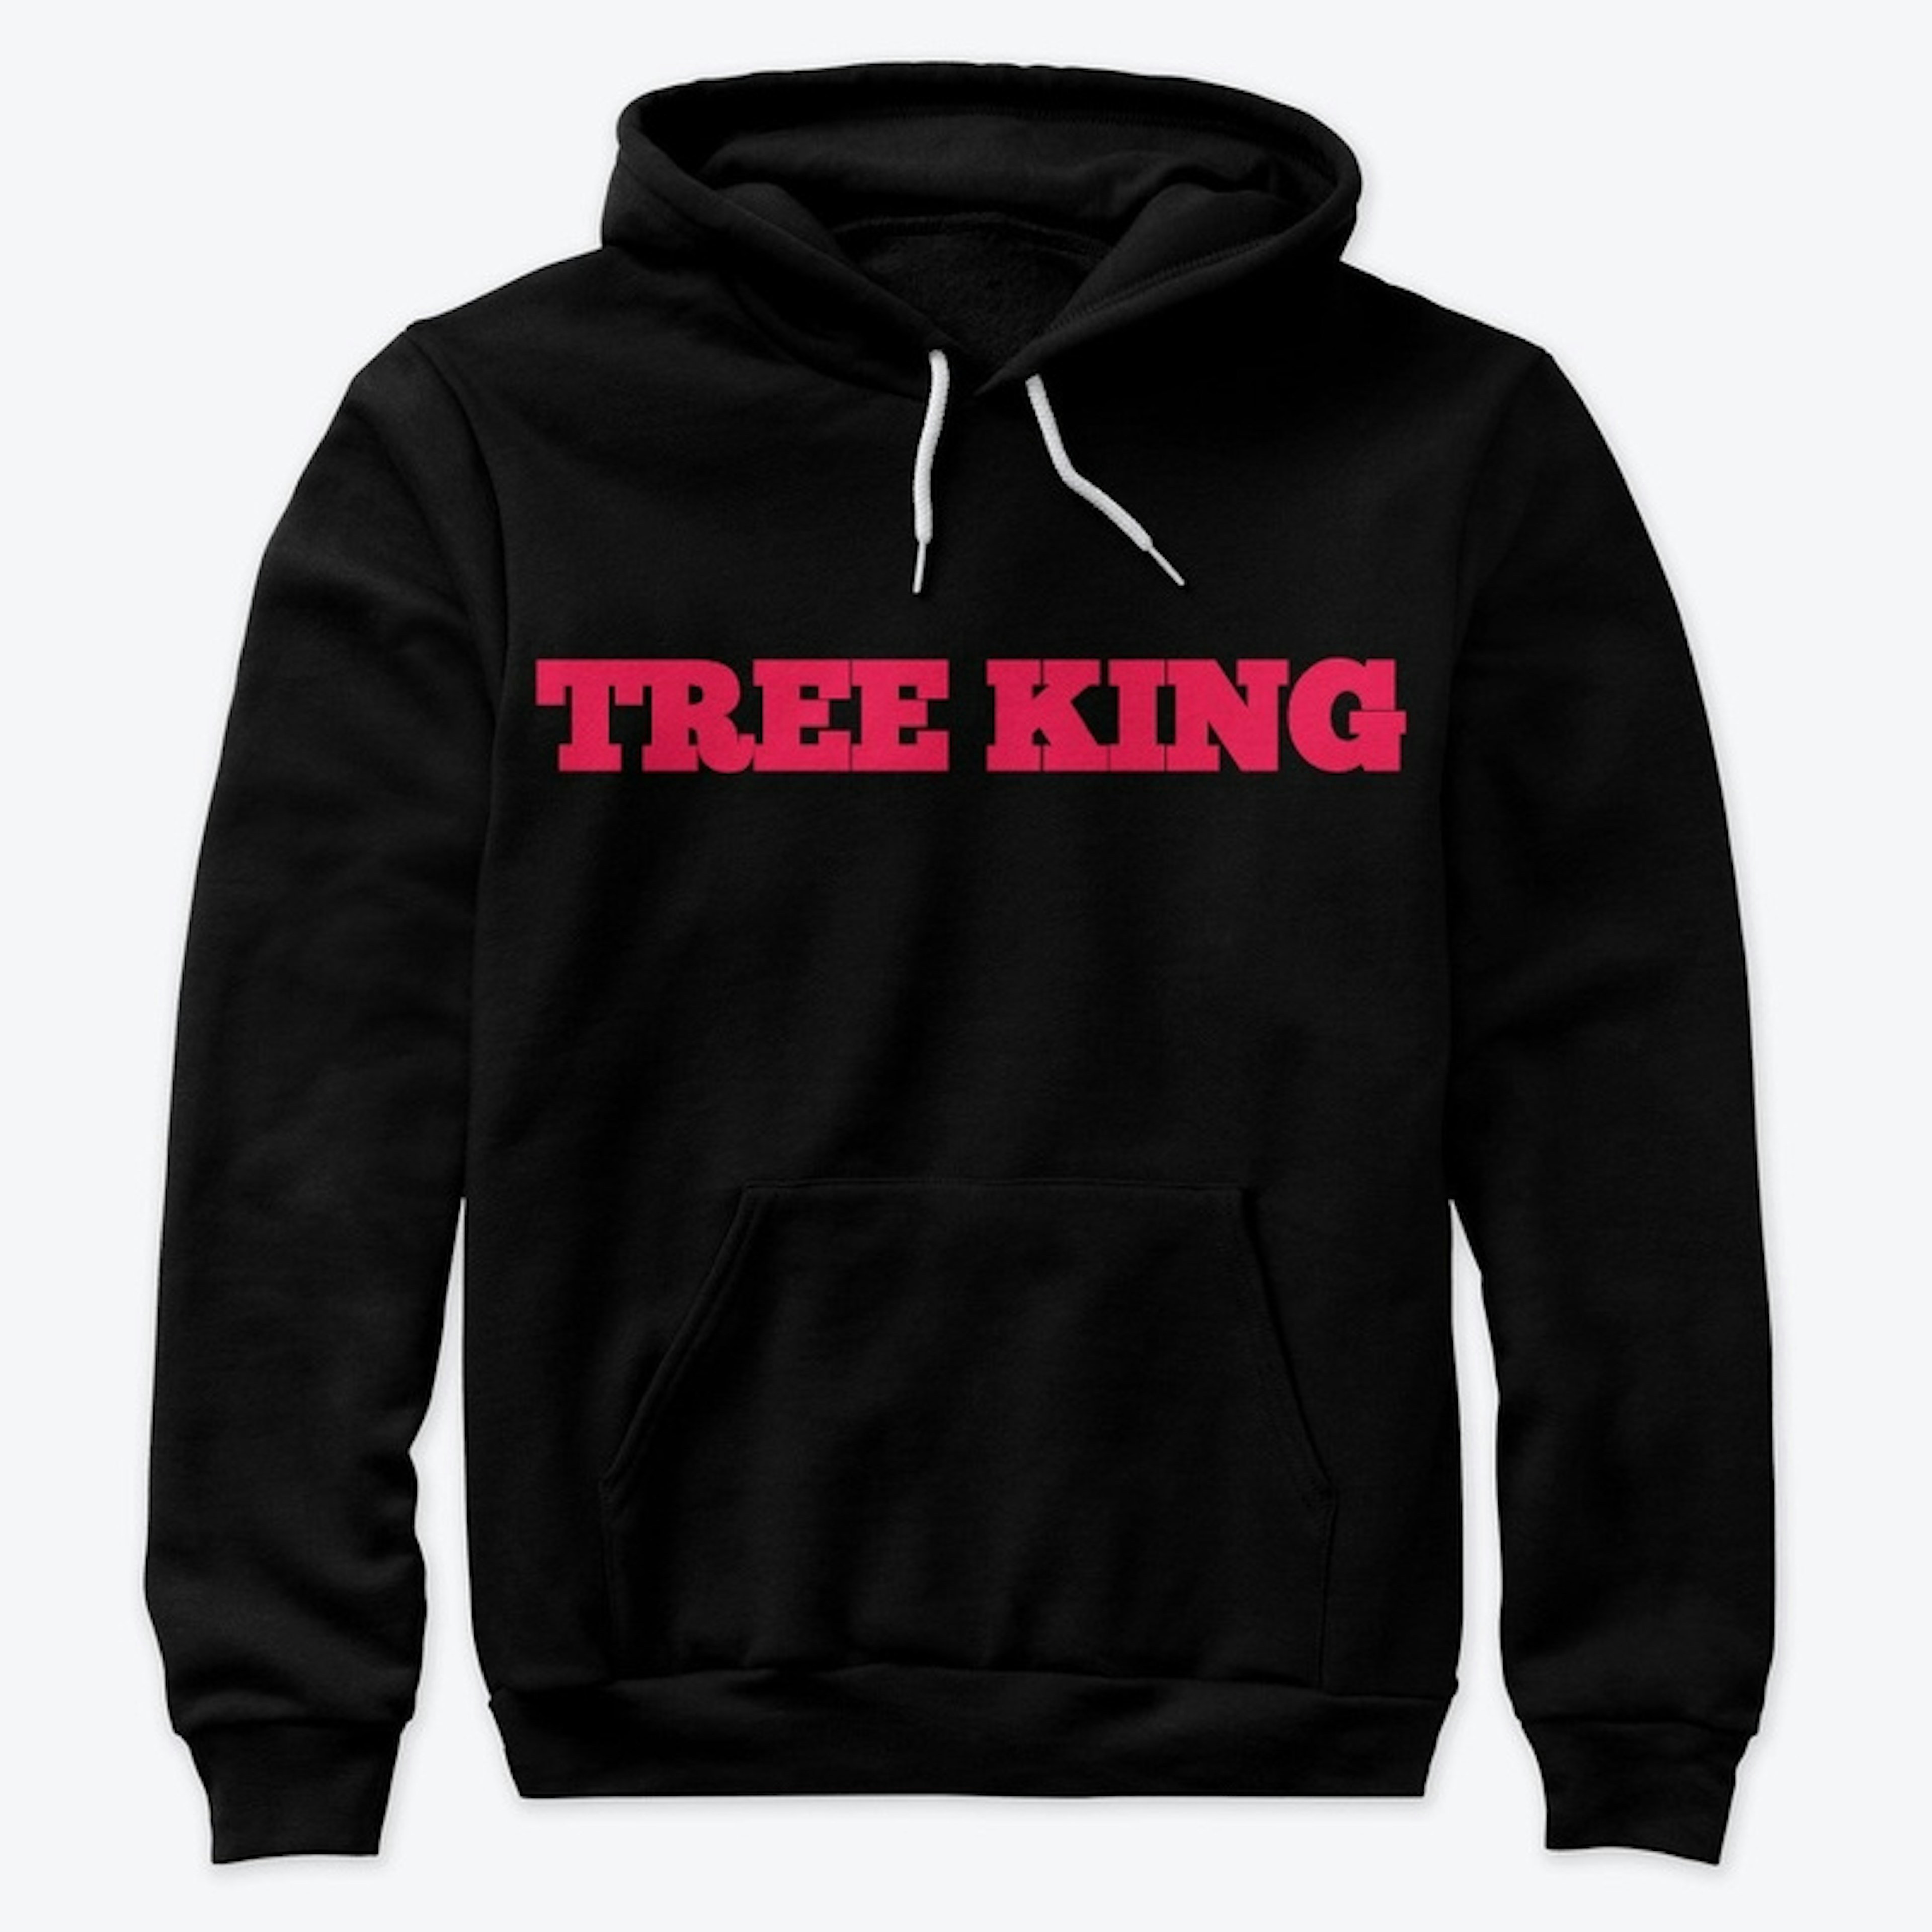 TREE KING Hoodie